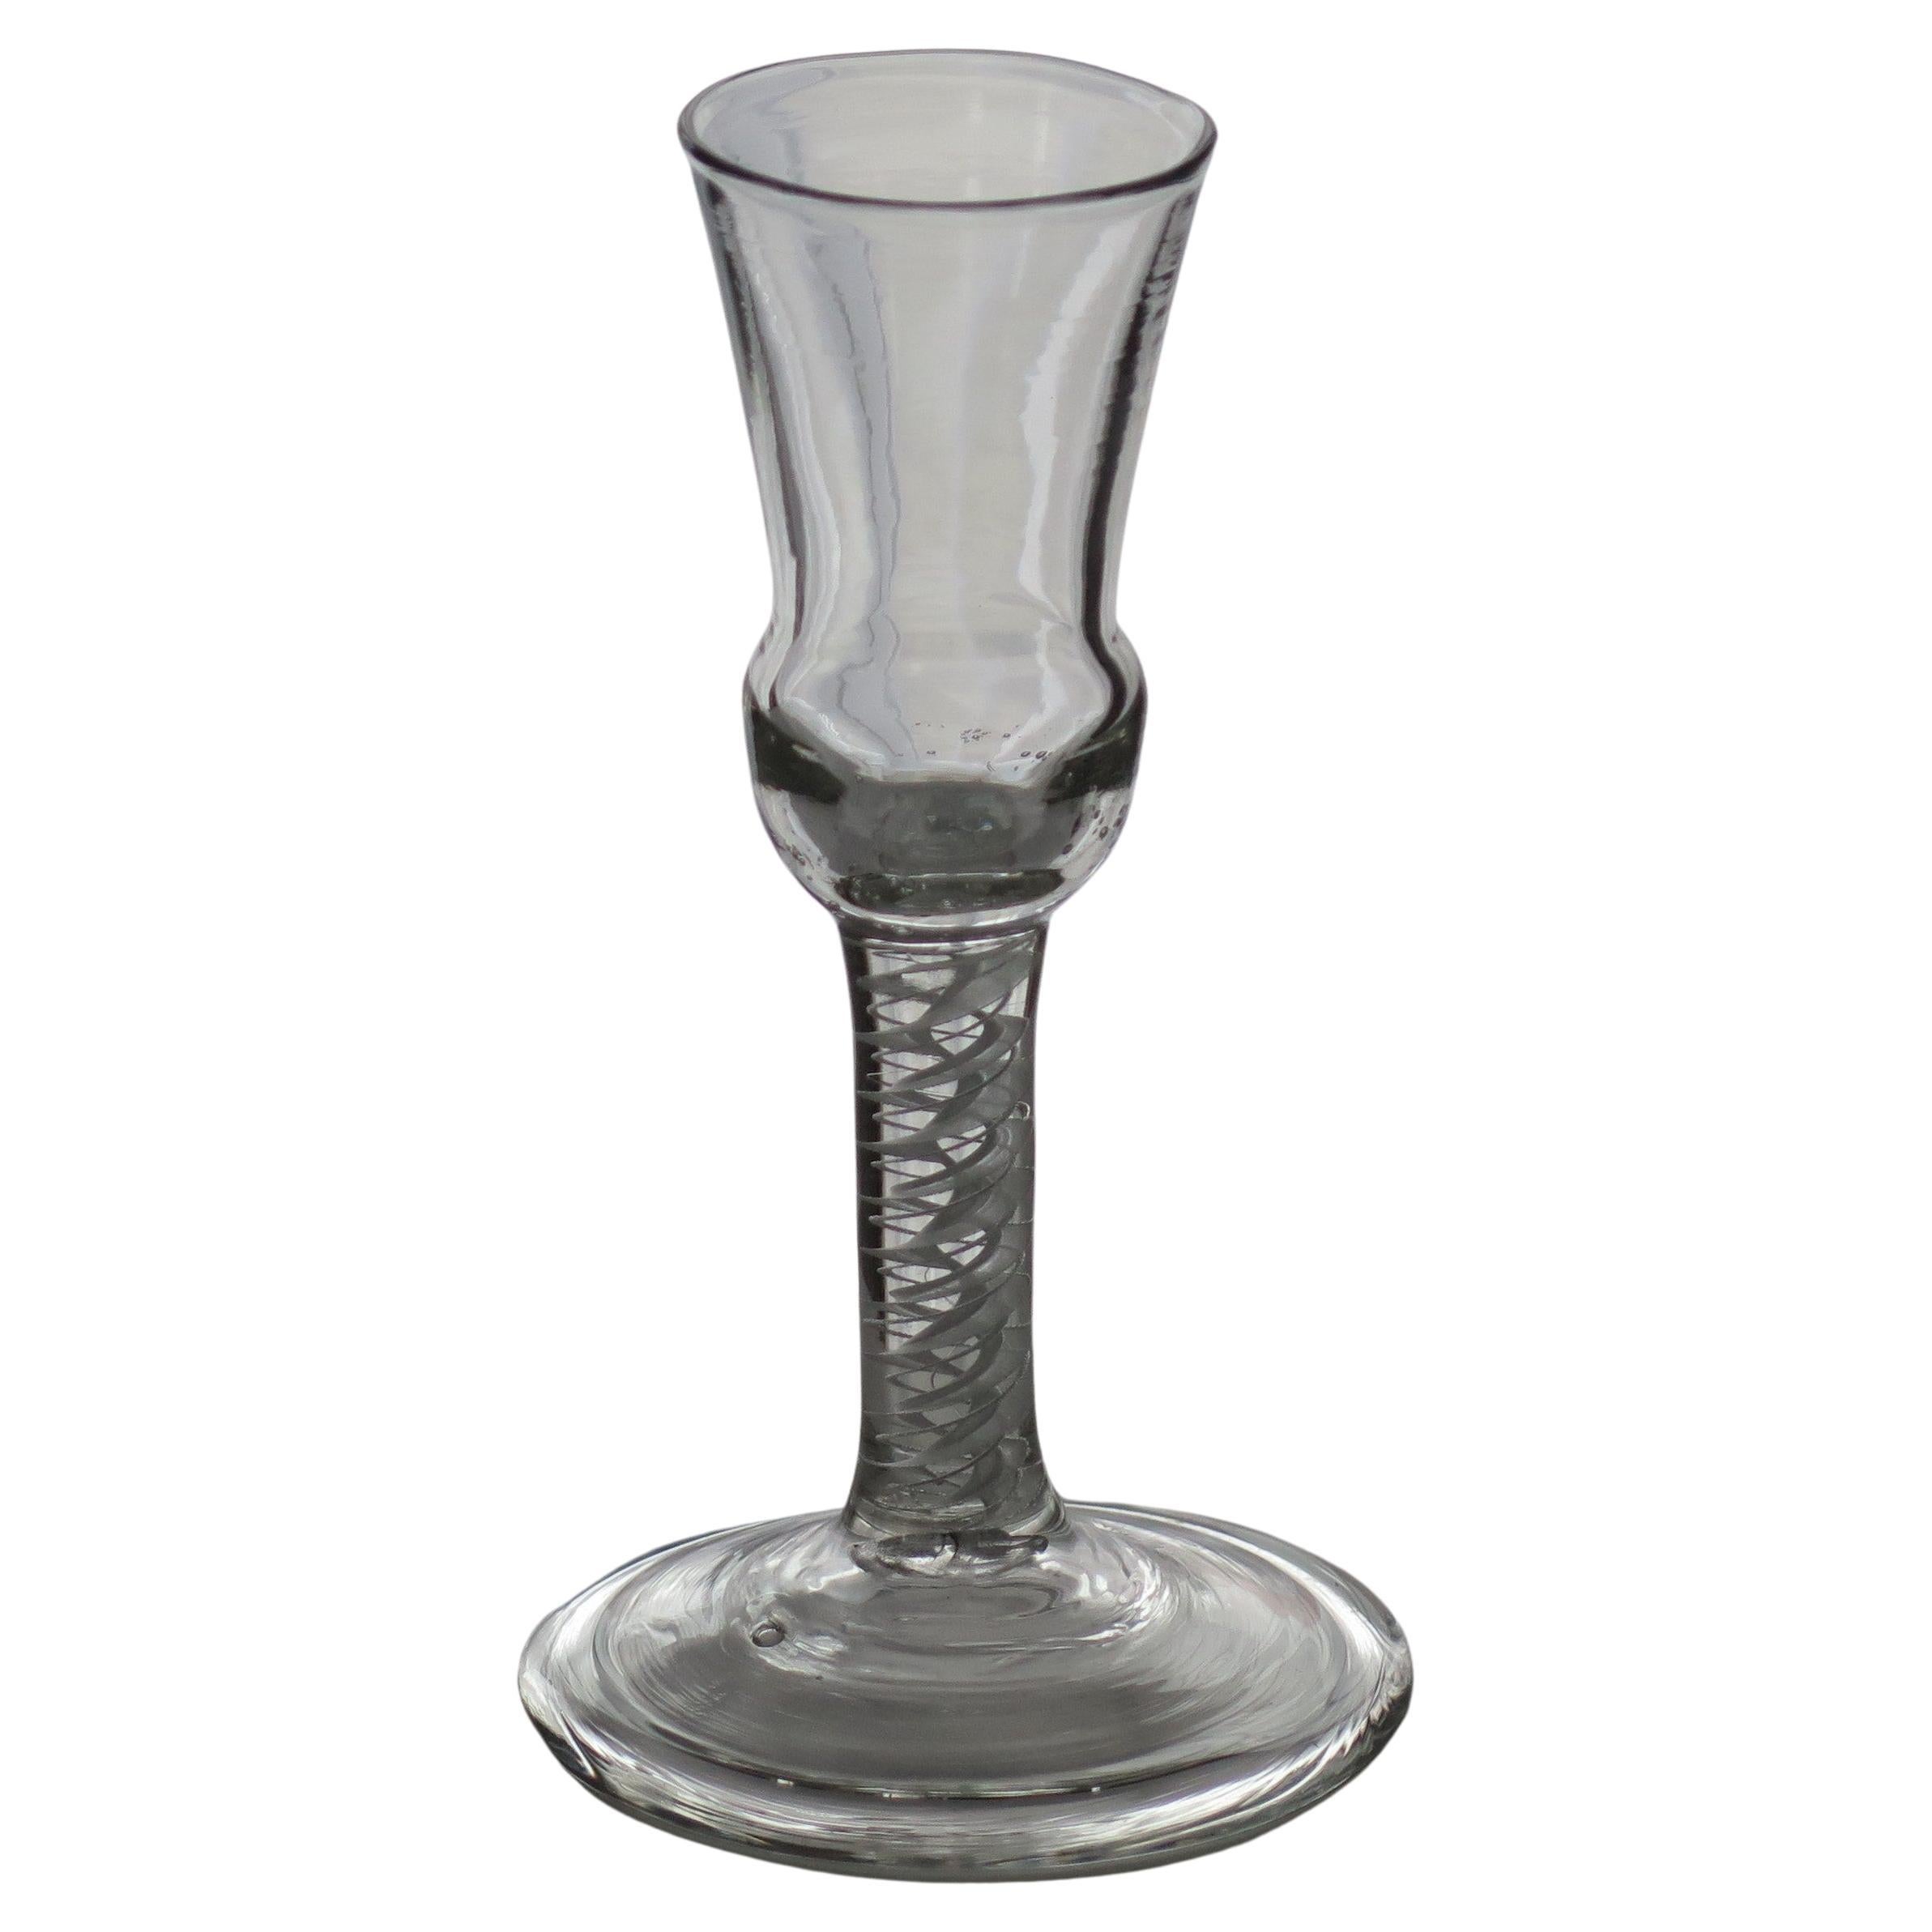 Dies ist ein hervorragendes, mundgeblasenes Beispiel eines englischen, mittelgeorgianischen Wein- oder Schnapsglases mit einer seltenen Distelschale, einem dicken, doppelseitigen undurchsichtigen Stiel (DSOT) und einem breiten, gefalteten Fuß aus